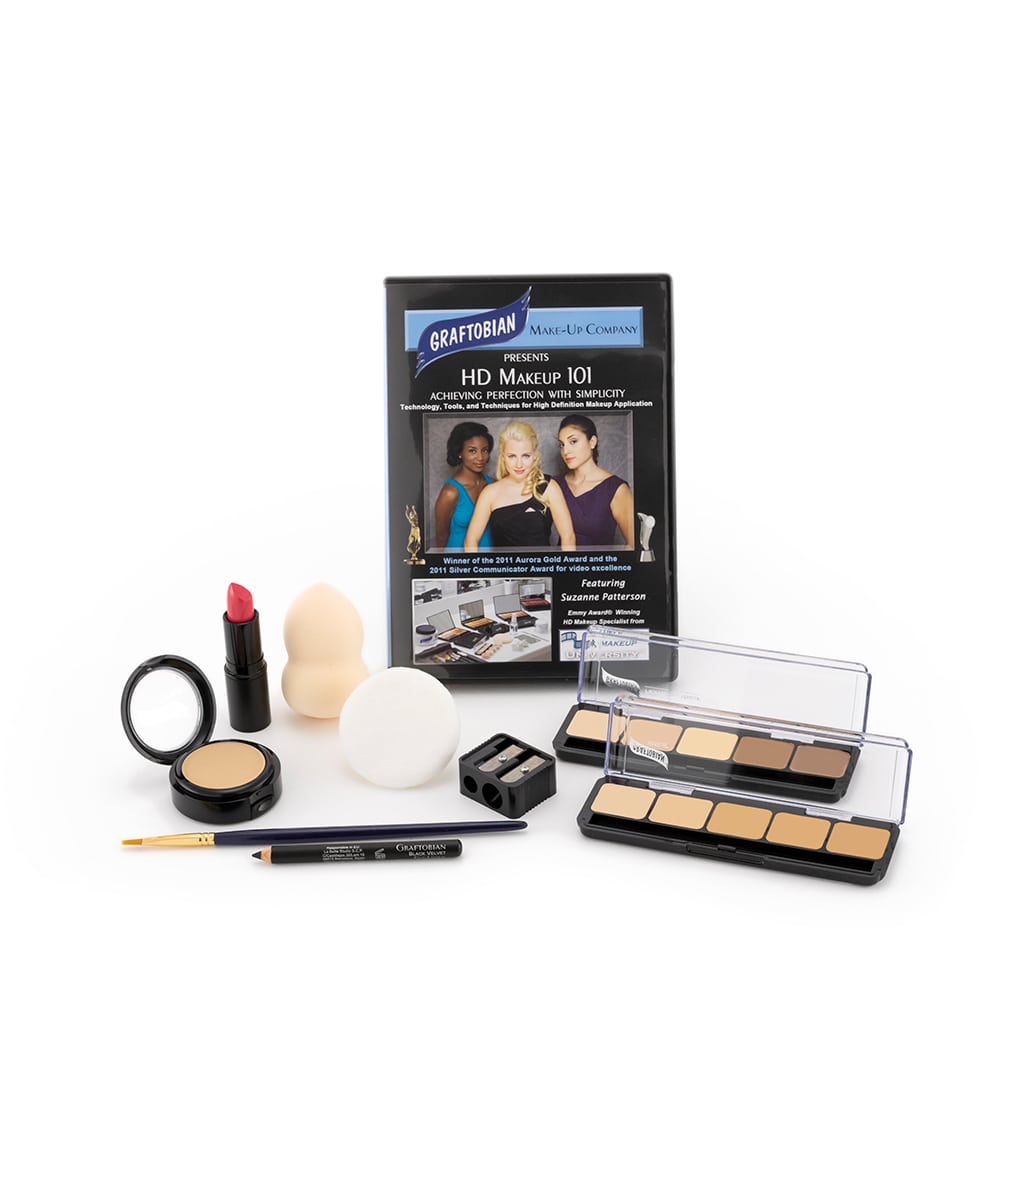 Ultra HD Makeup – Graftobian Make-Up Company